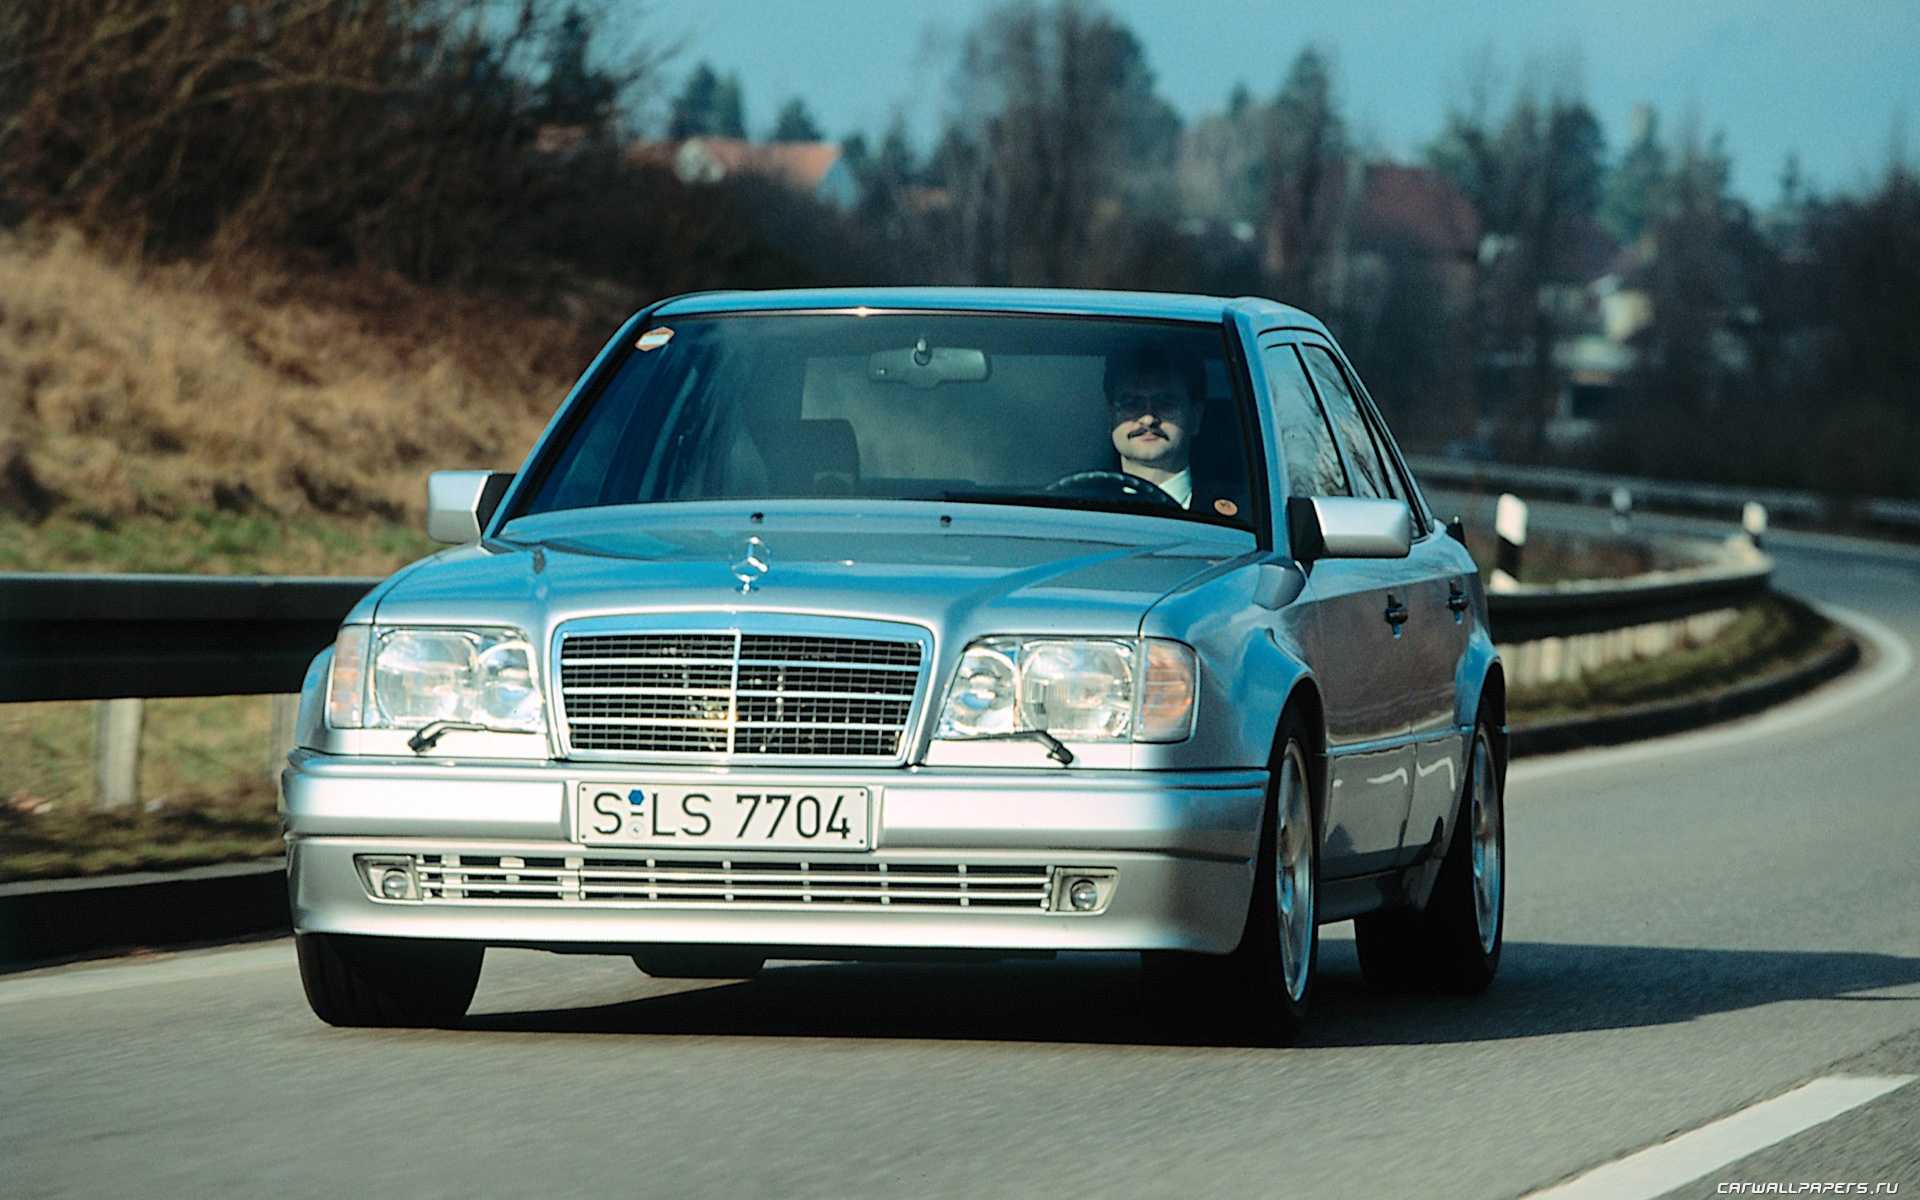 Mercedess w124 1984-1995 г. покупать или нет?